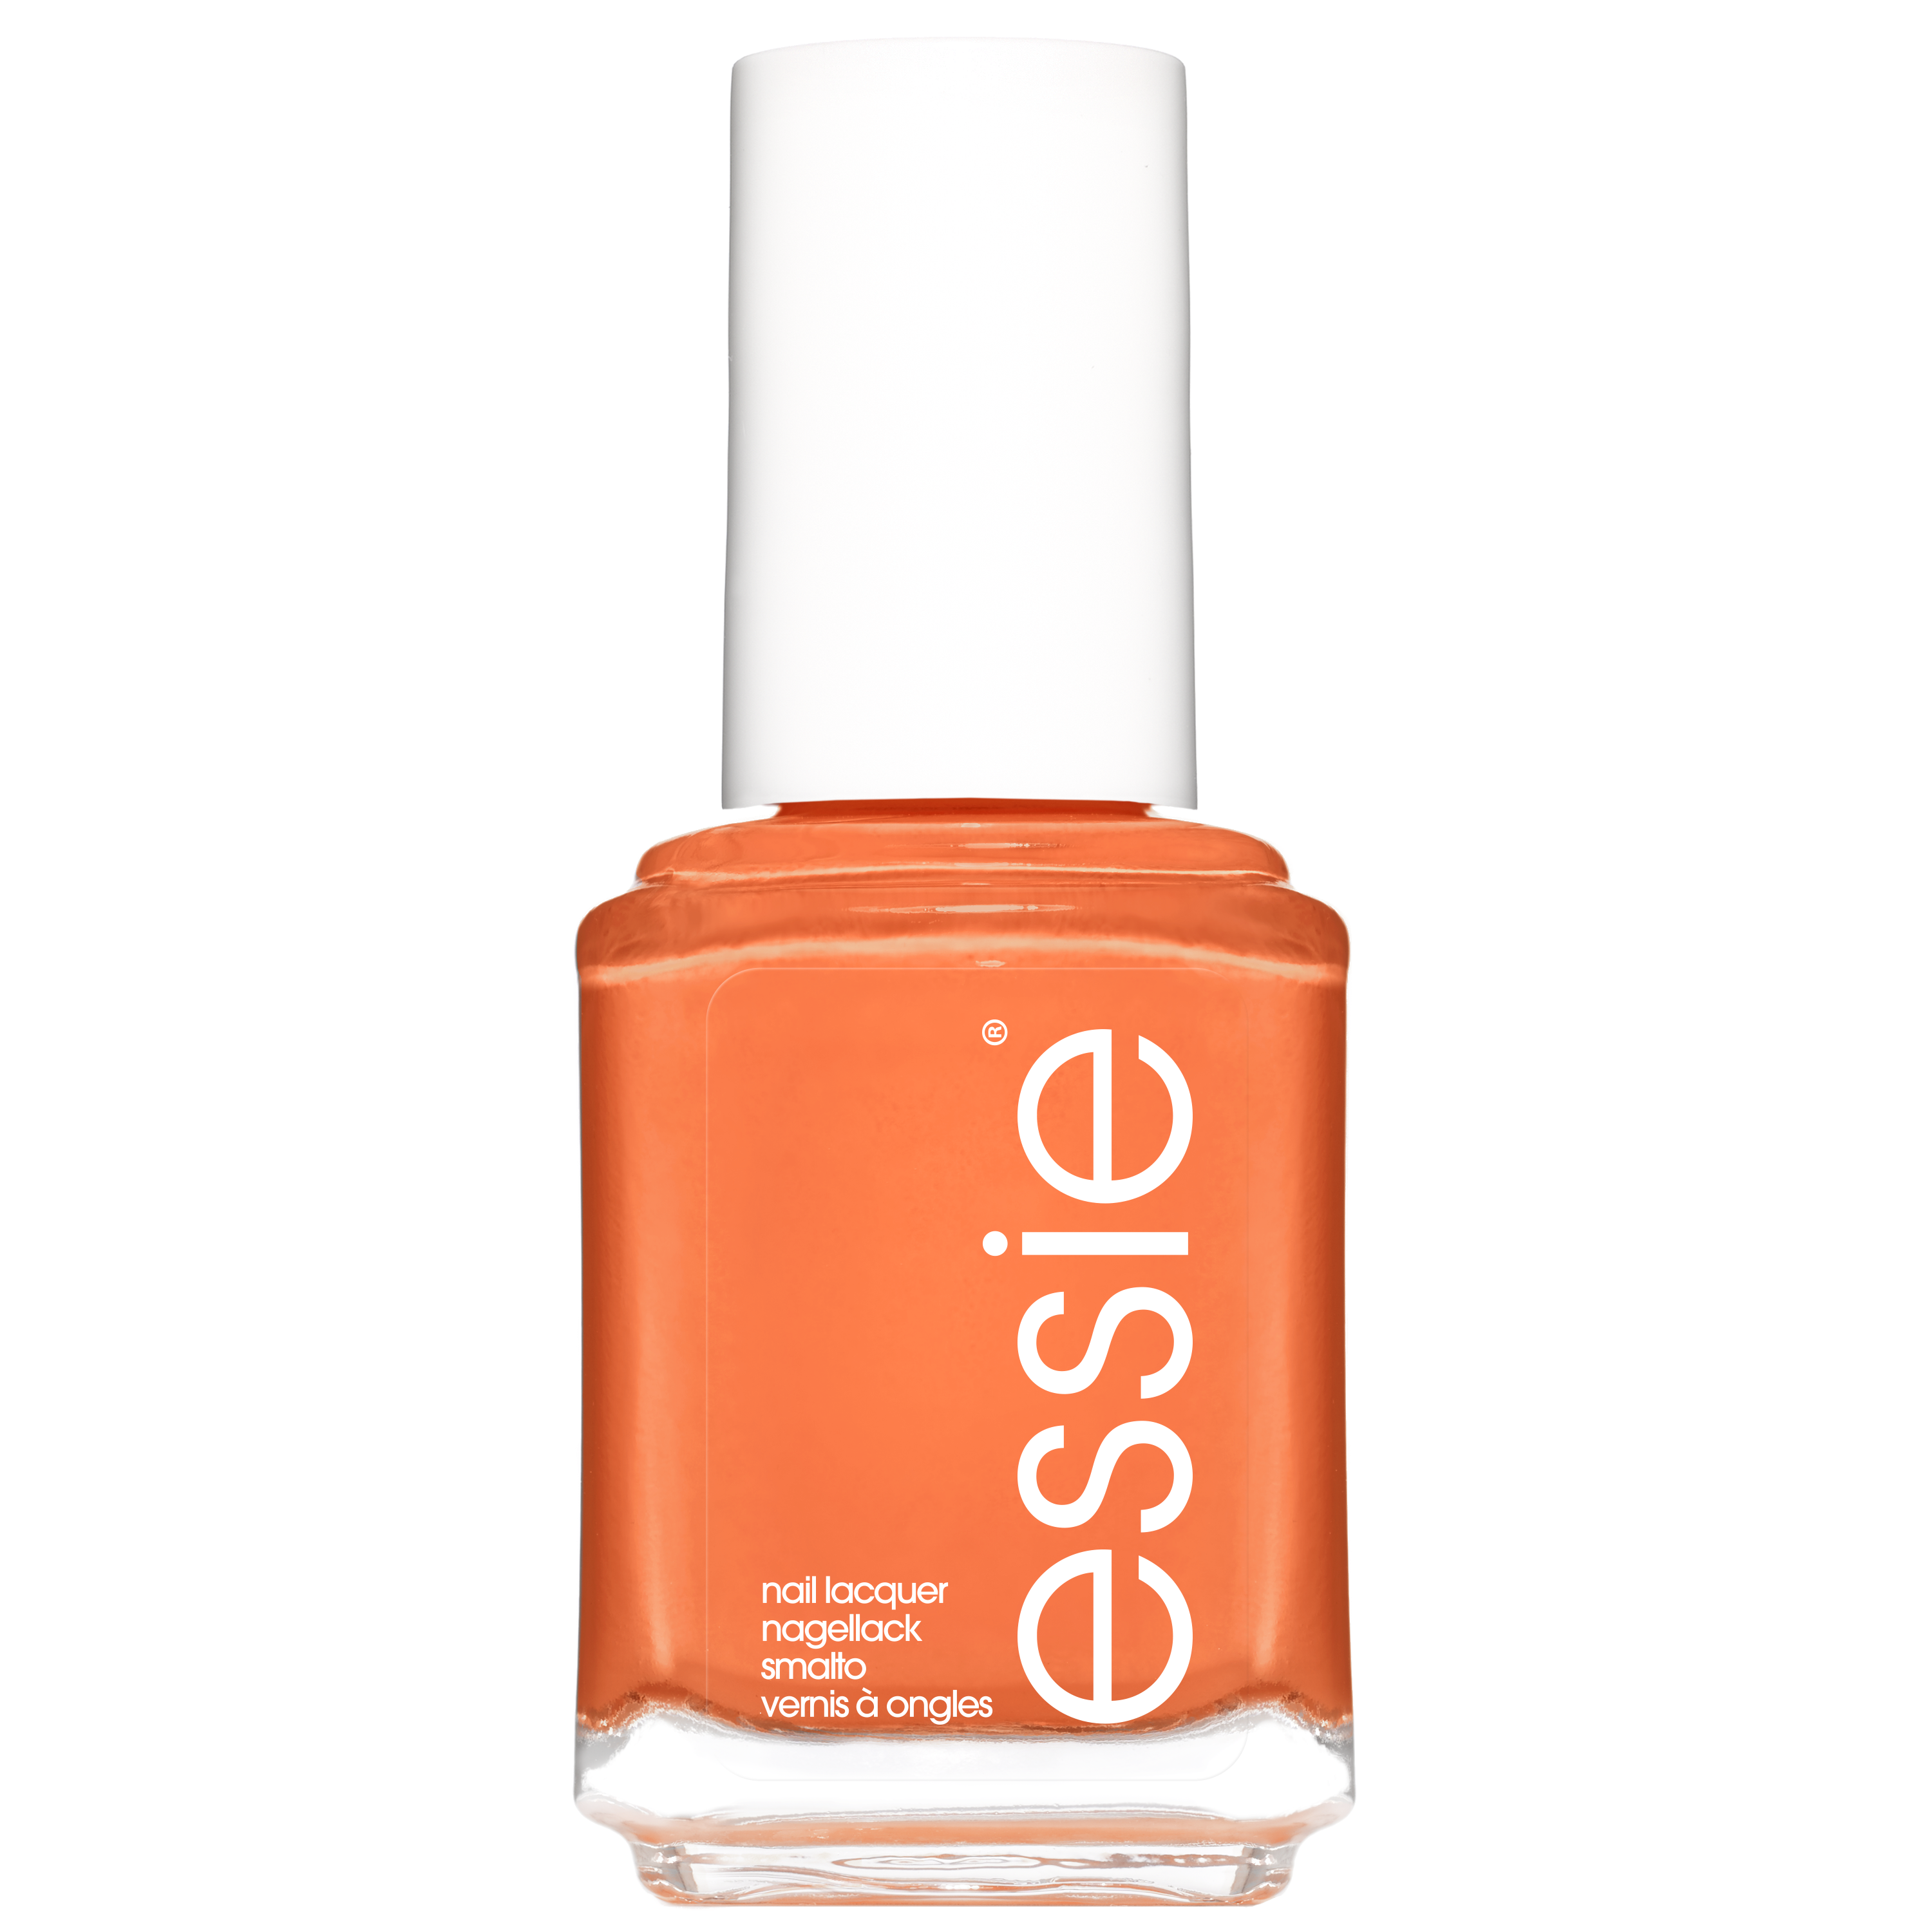 Essie summer 2020 limited edition - 701 souq up the sun - oranje - glanzende nagellak - 13,5 ml